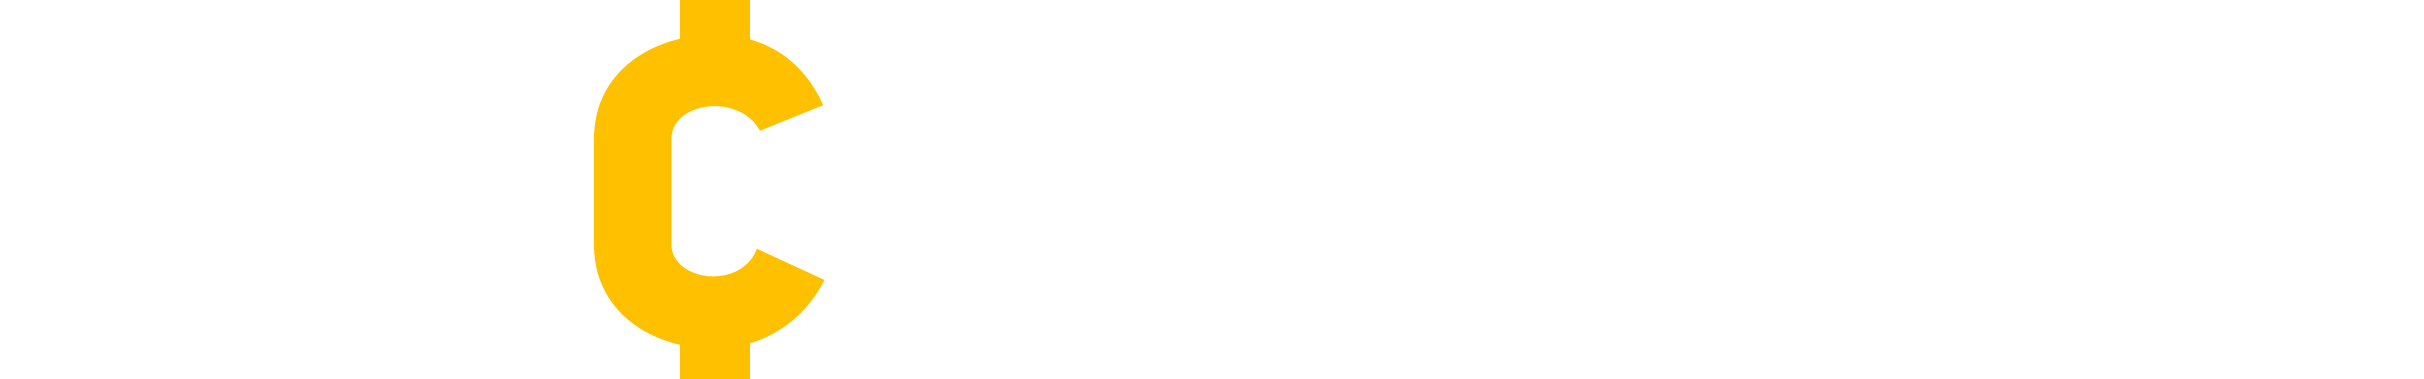 mycrypter logo